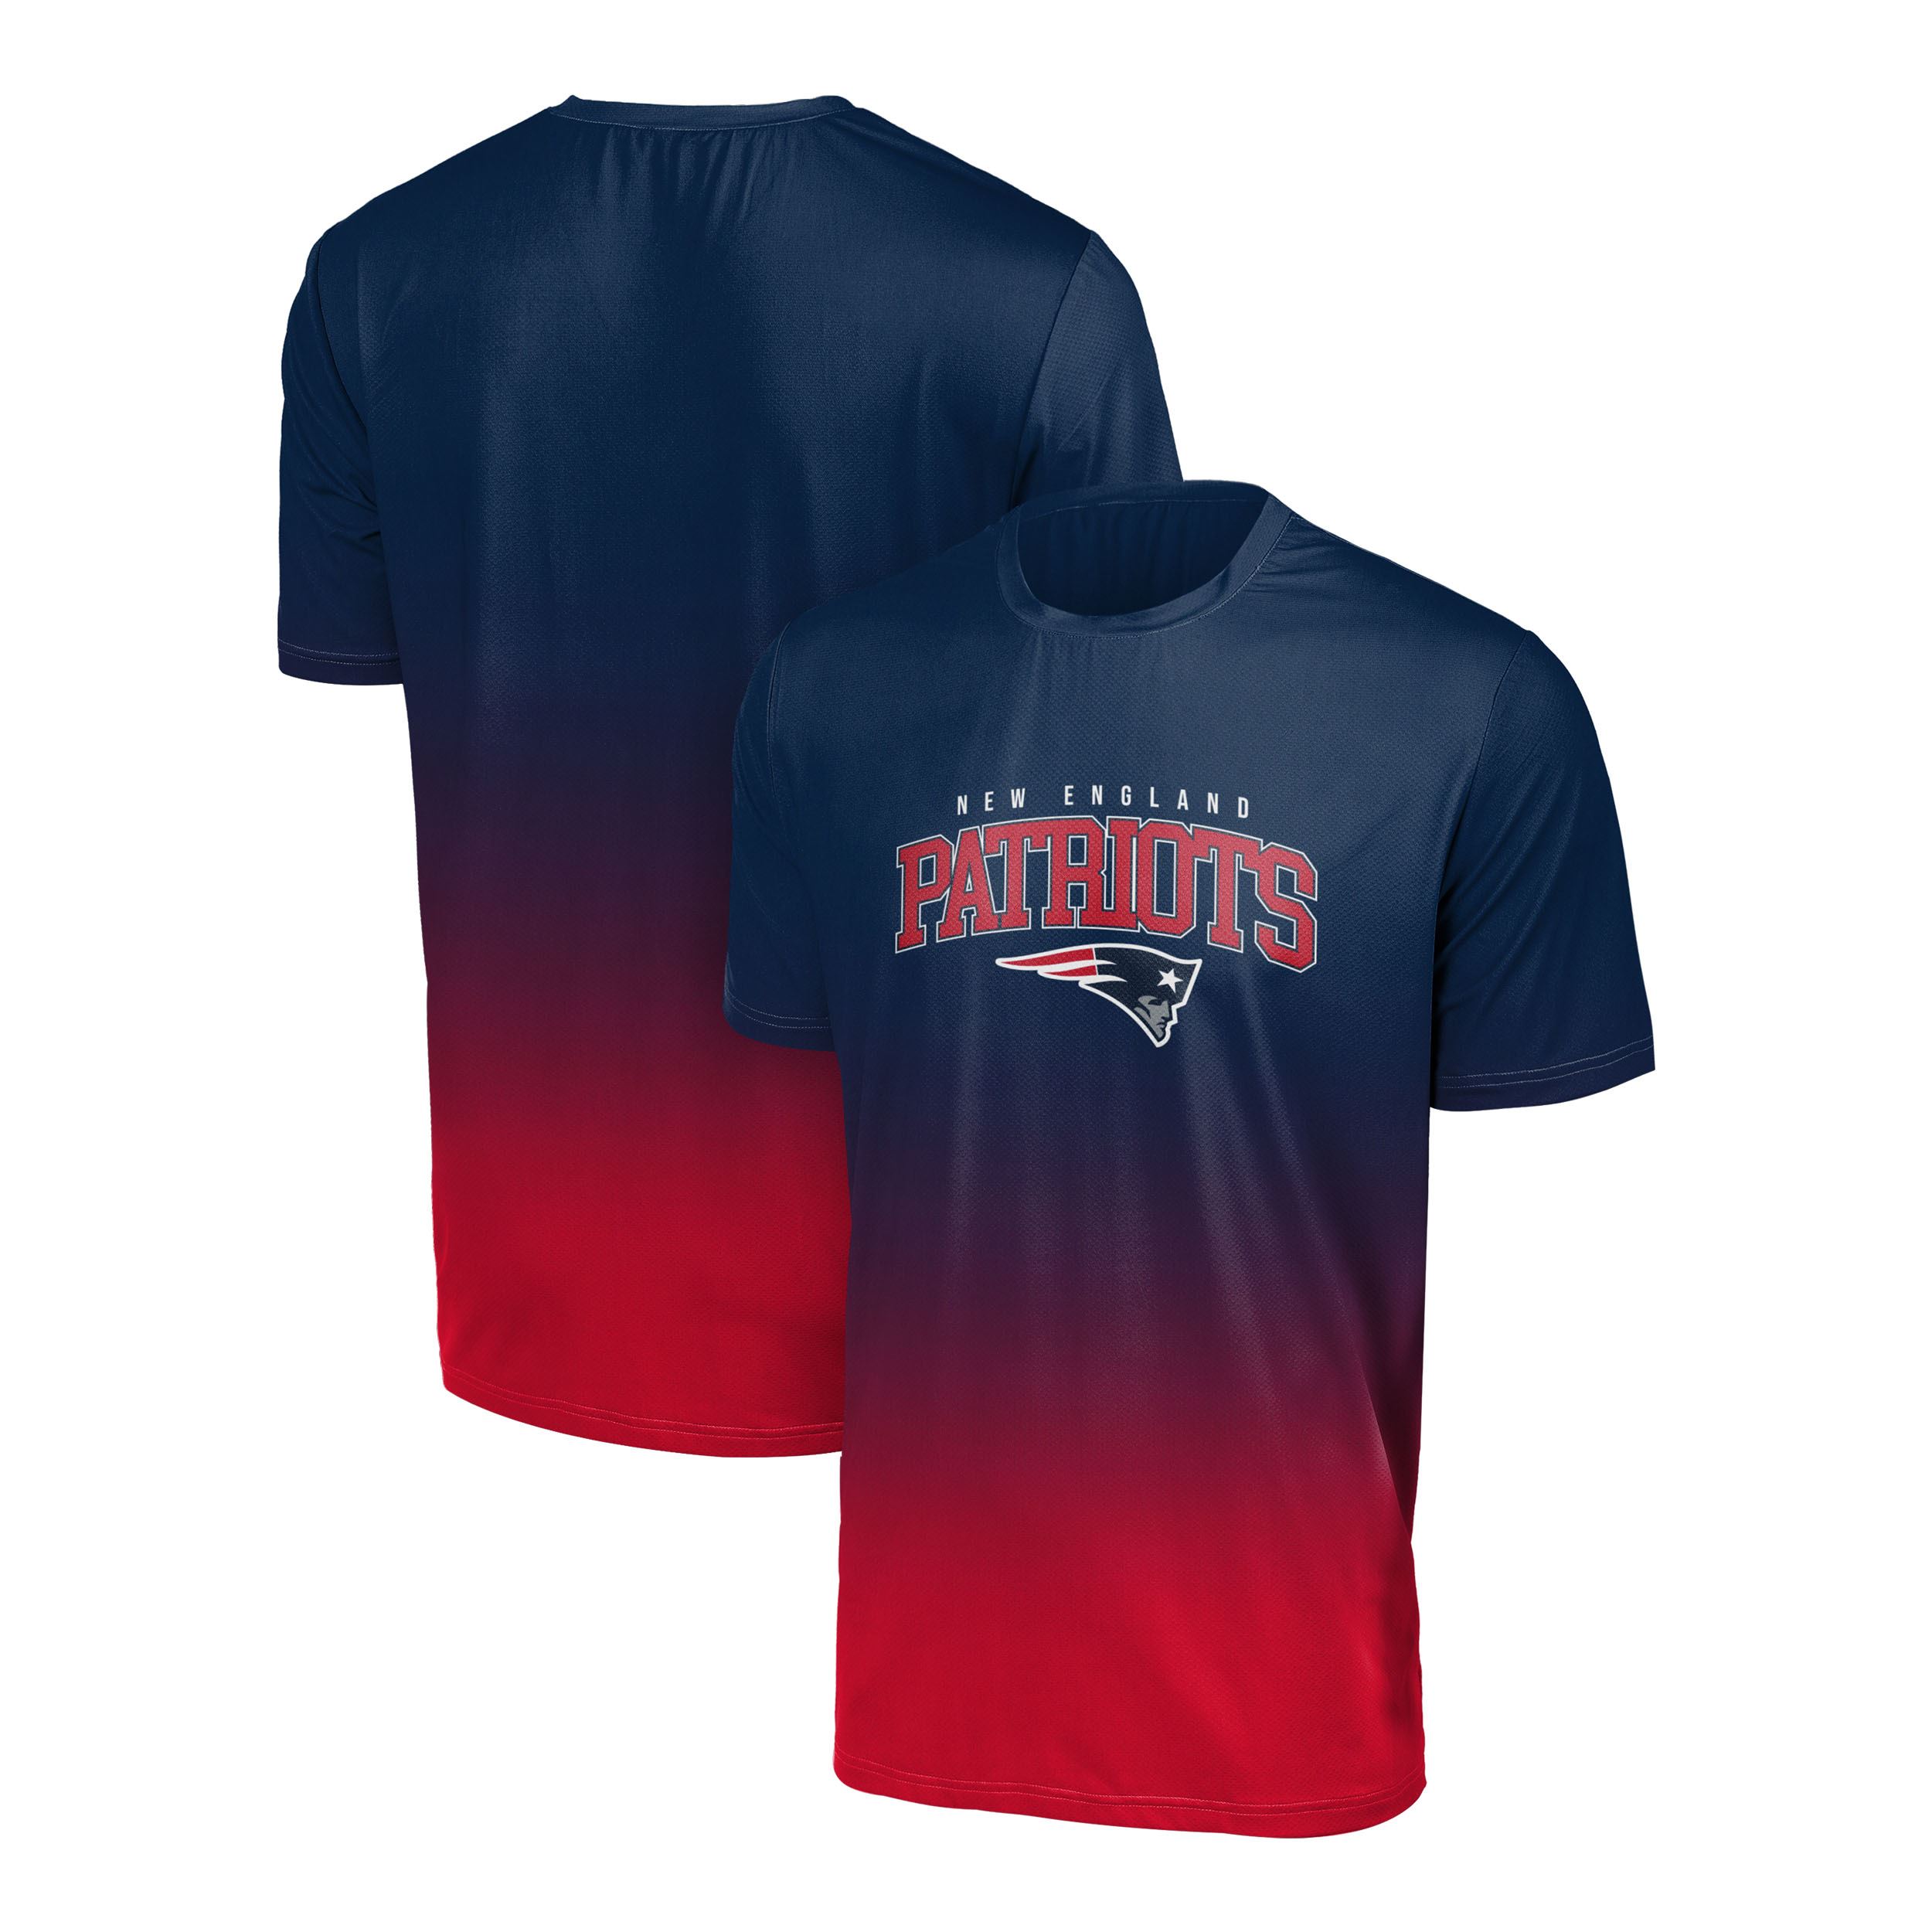 New England Patriots NFL Gradient Mesh Jersey Short Sleeve Herren T-Shirt Foco